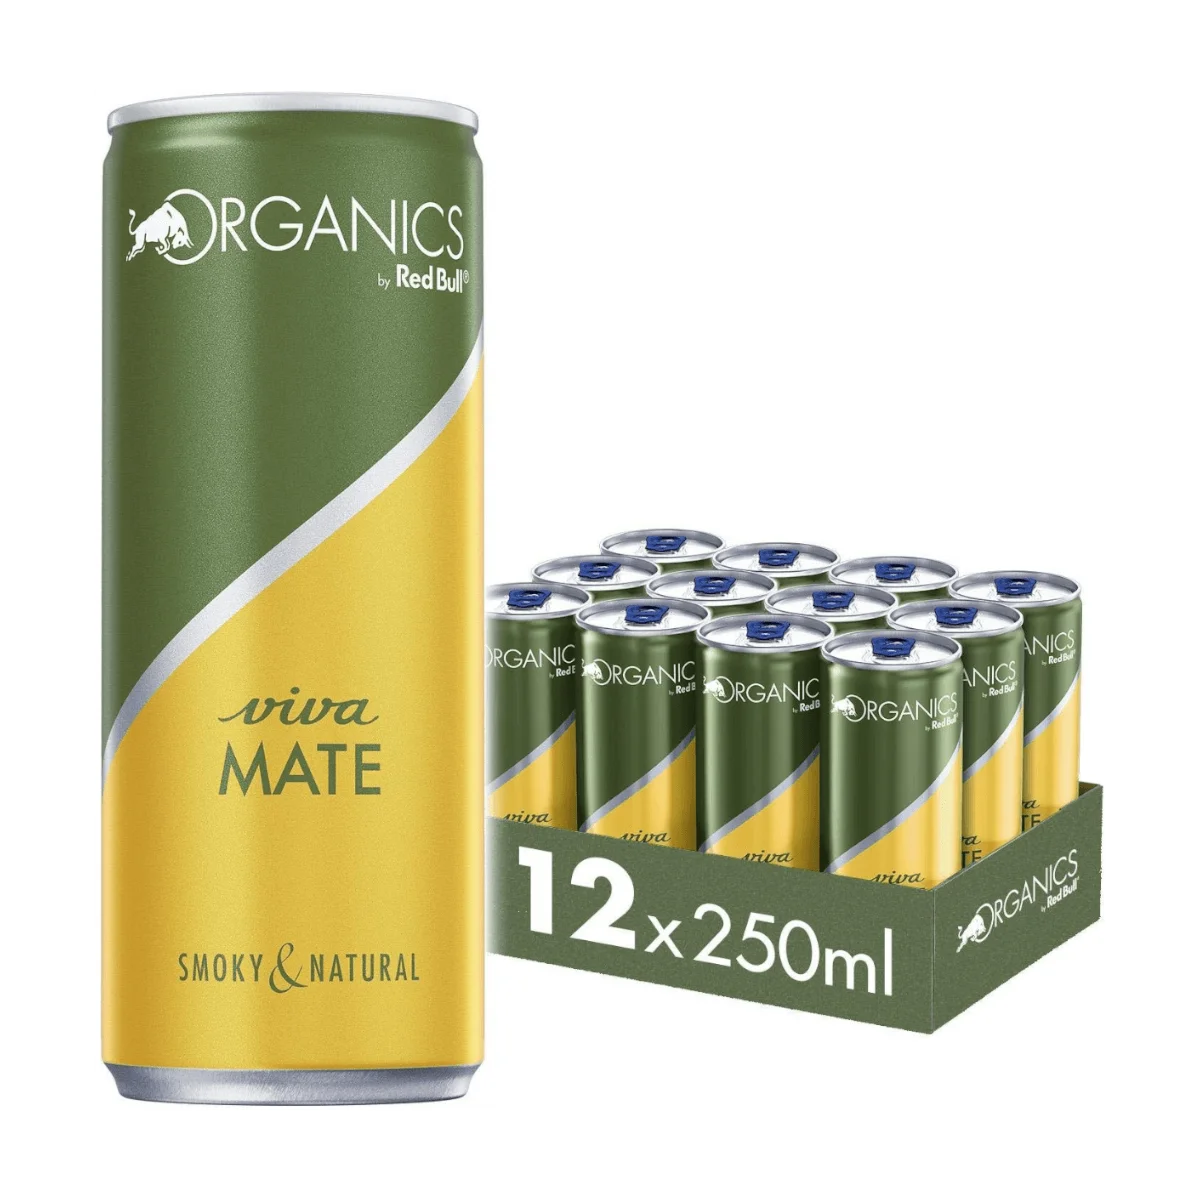 Red Bull Organics Viva Mate (12 x 250 ml)